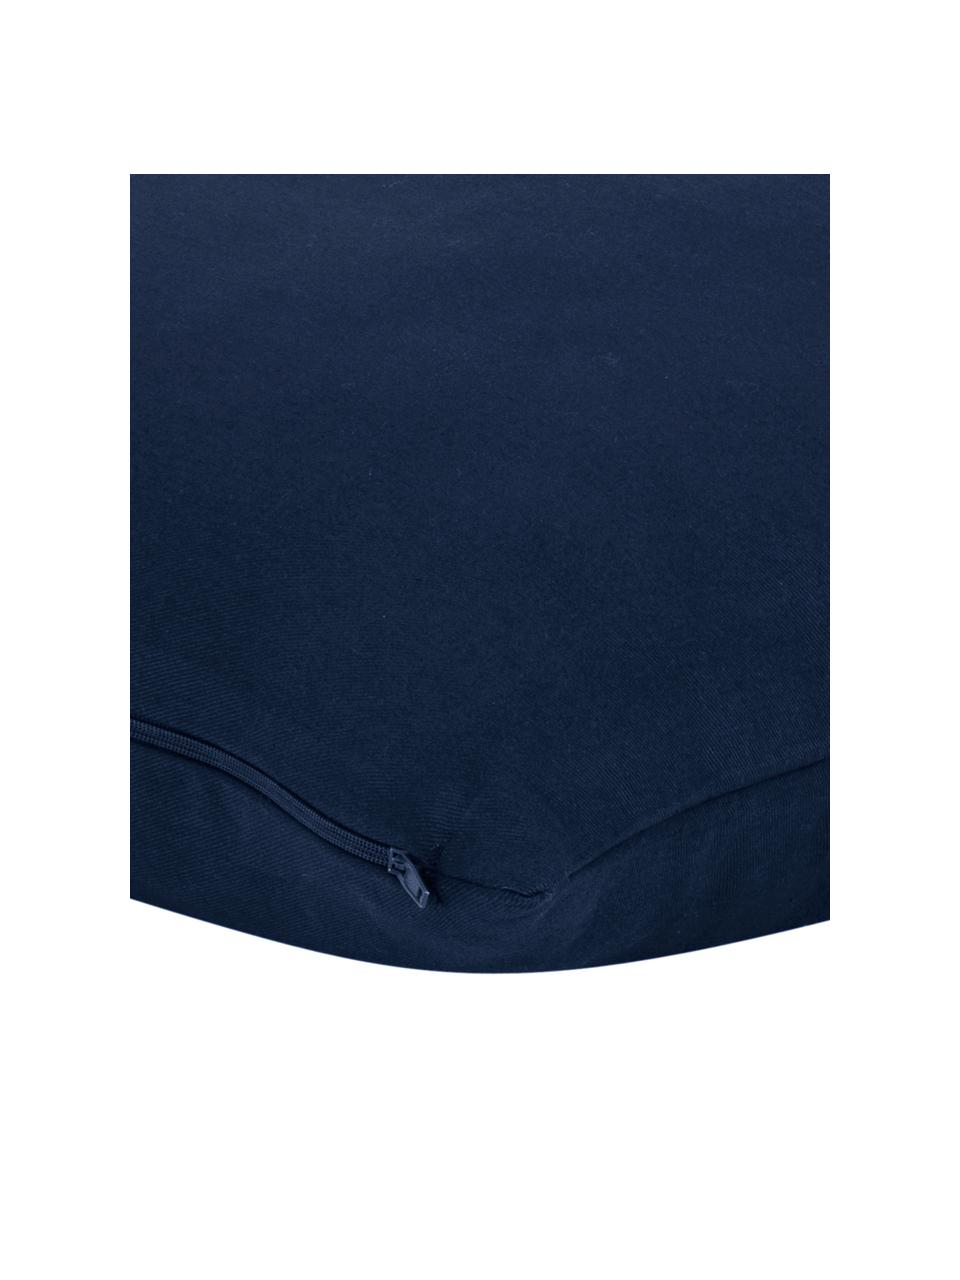 Katoenen kussenhoes Mads in marineblauw, 100% katoen, Marineblauw, 40 x 40 cm